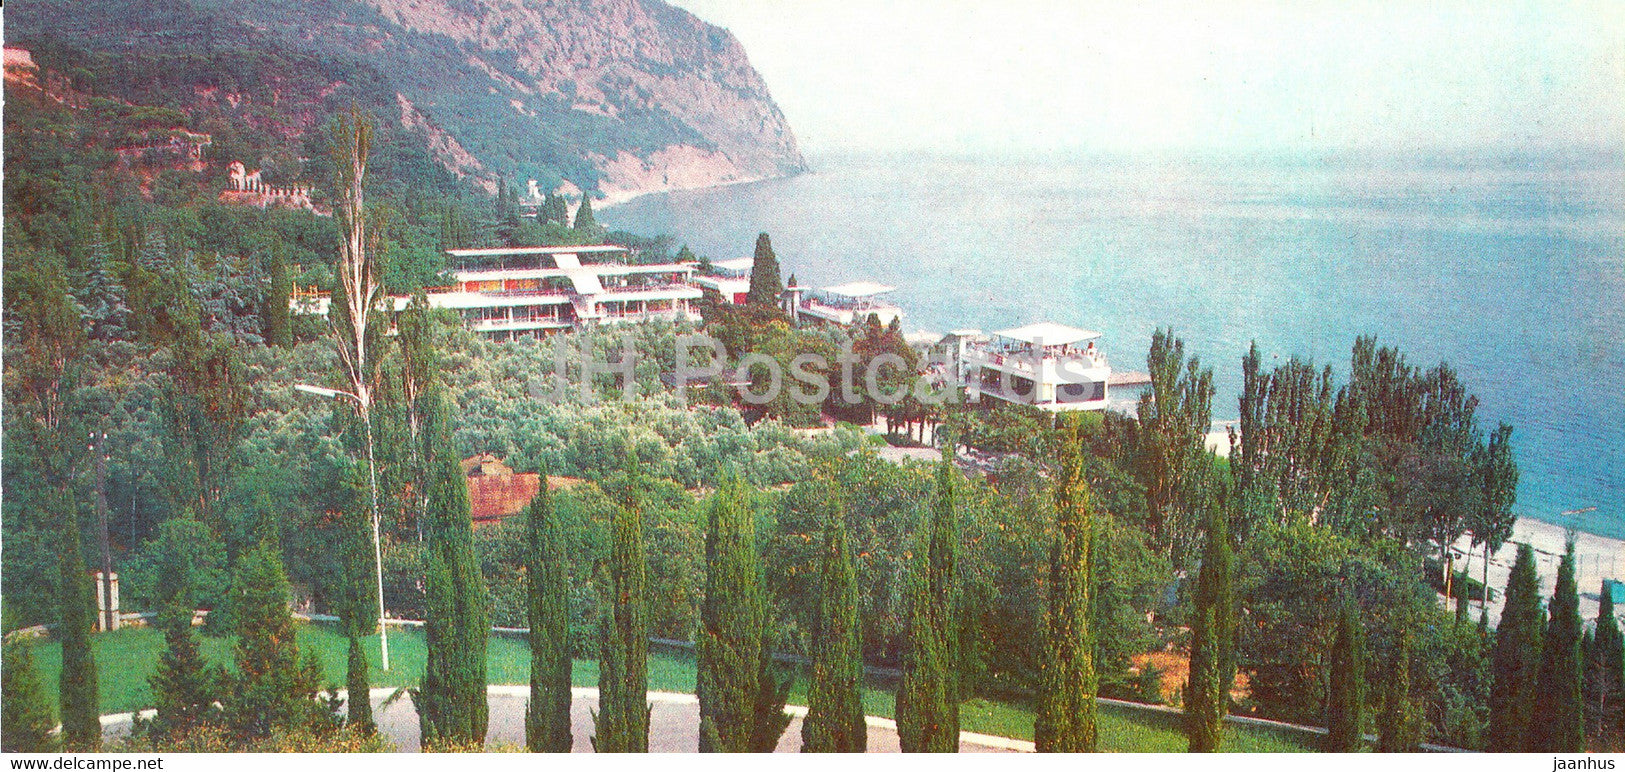 Yalta - pioneer camp Artek and Morskoy - 1982 - Ukraine USSR - unused - JH Postcards